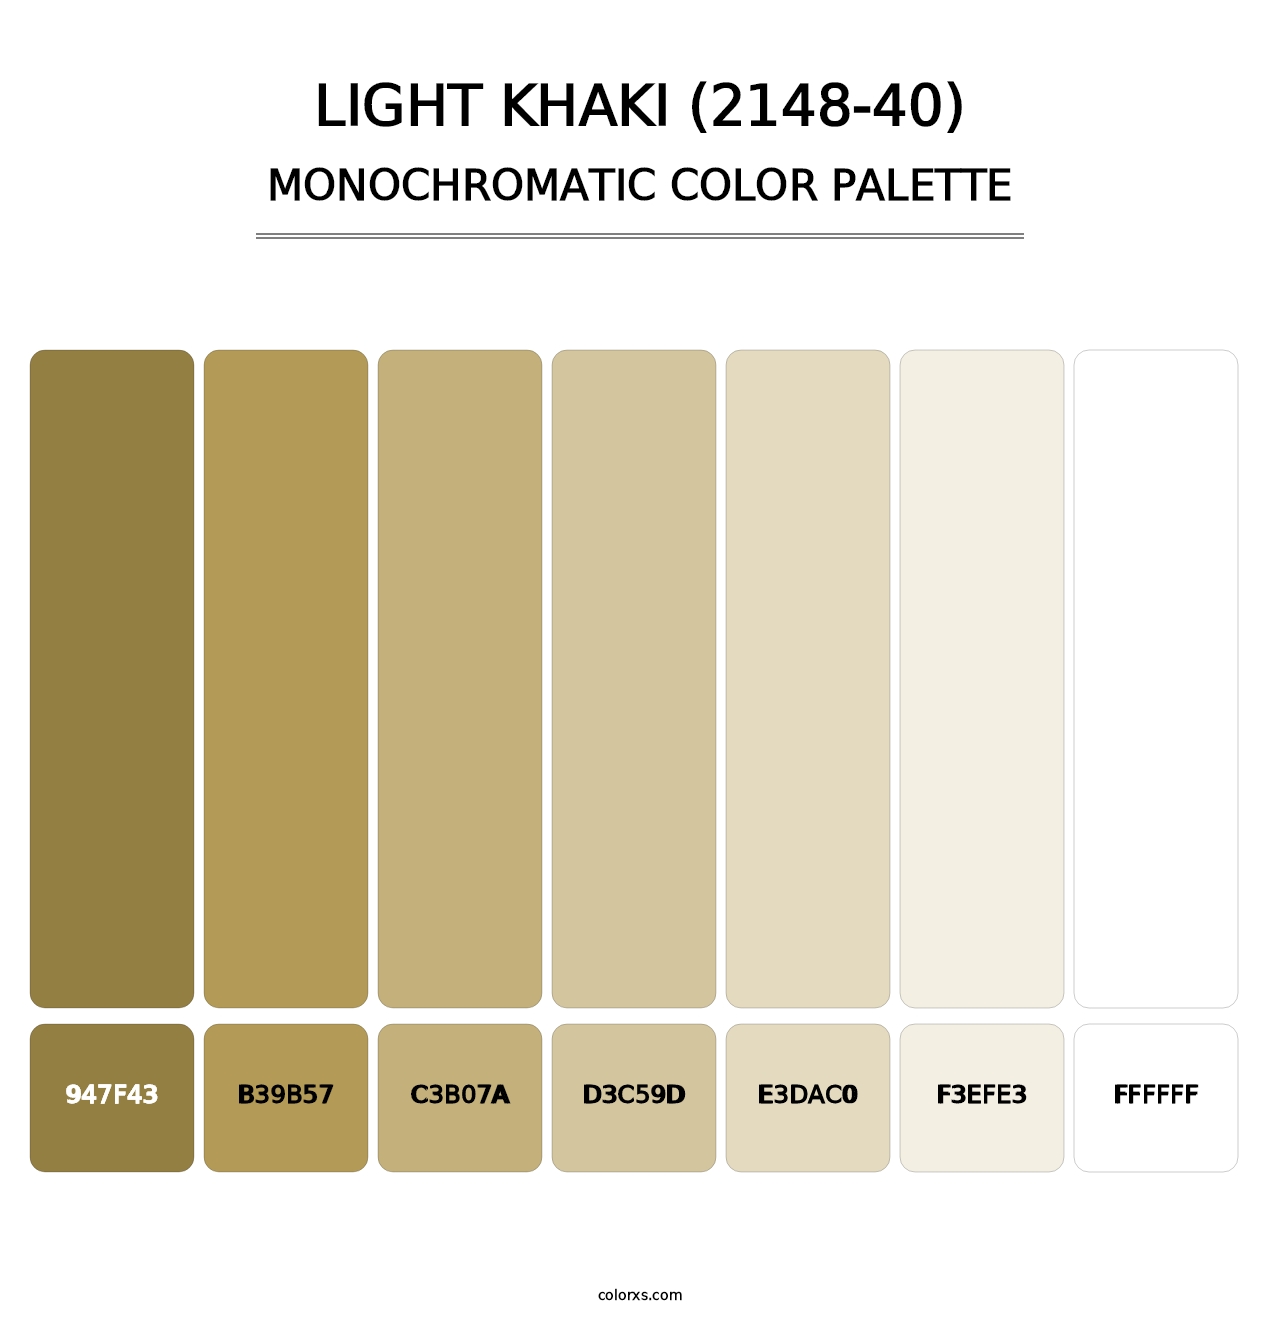 Light Khaki (2148-40) - Monochromatic Color Palette